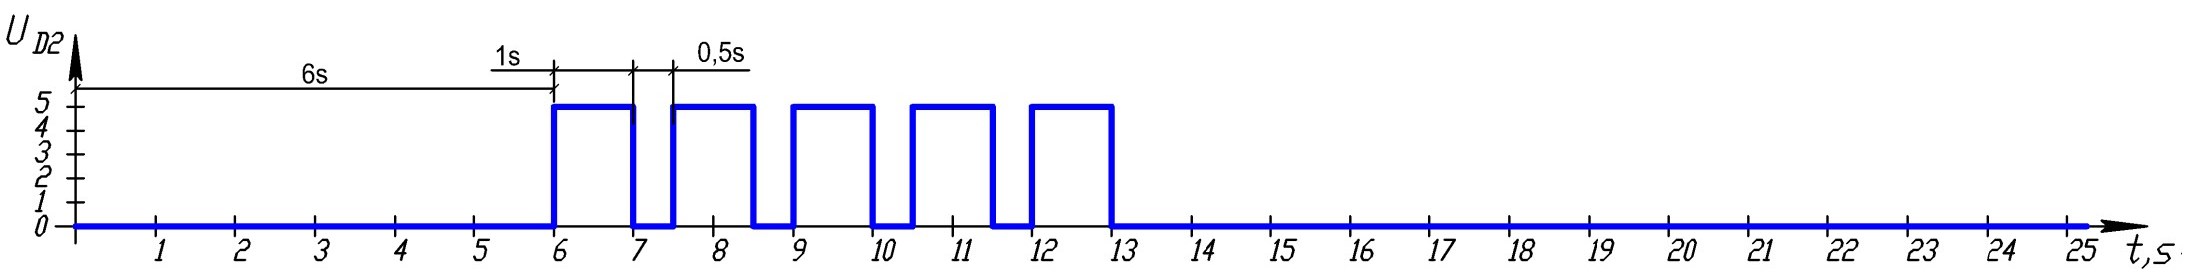 Пример повторяющейся последовательности импульсов